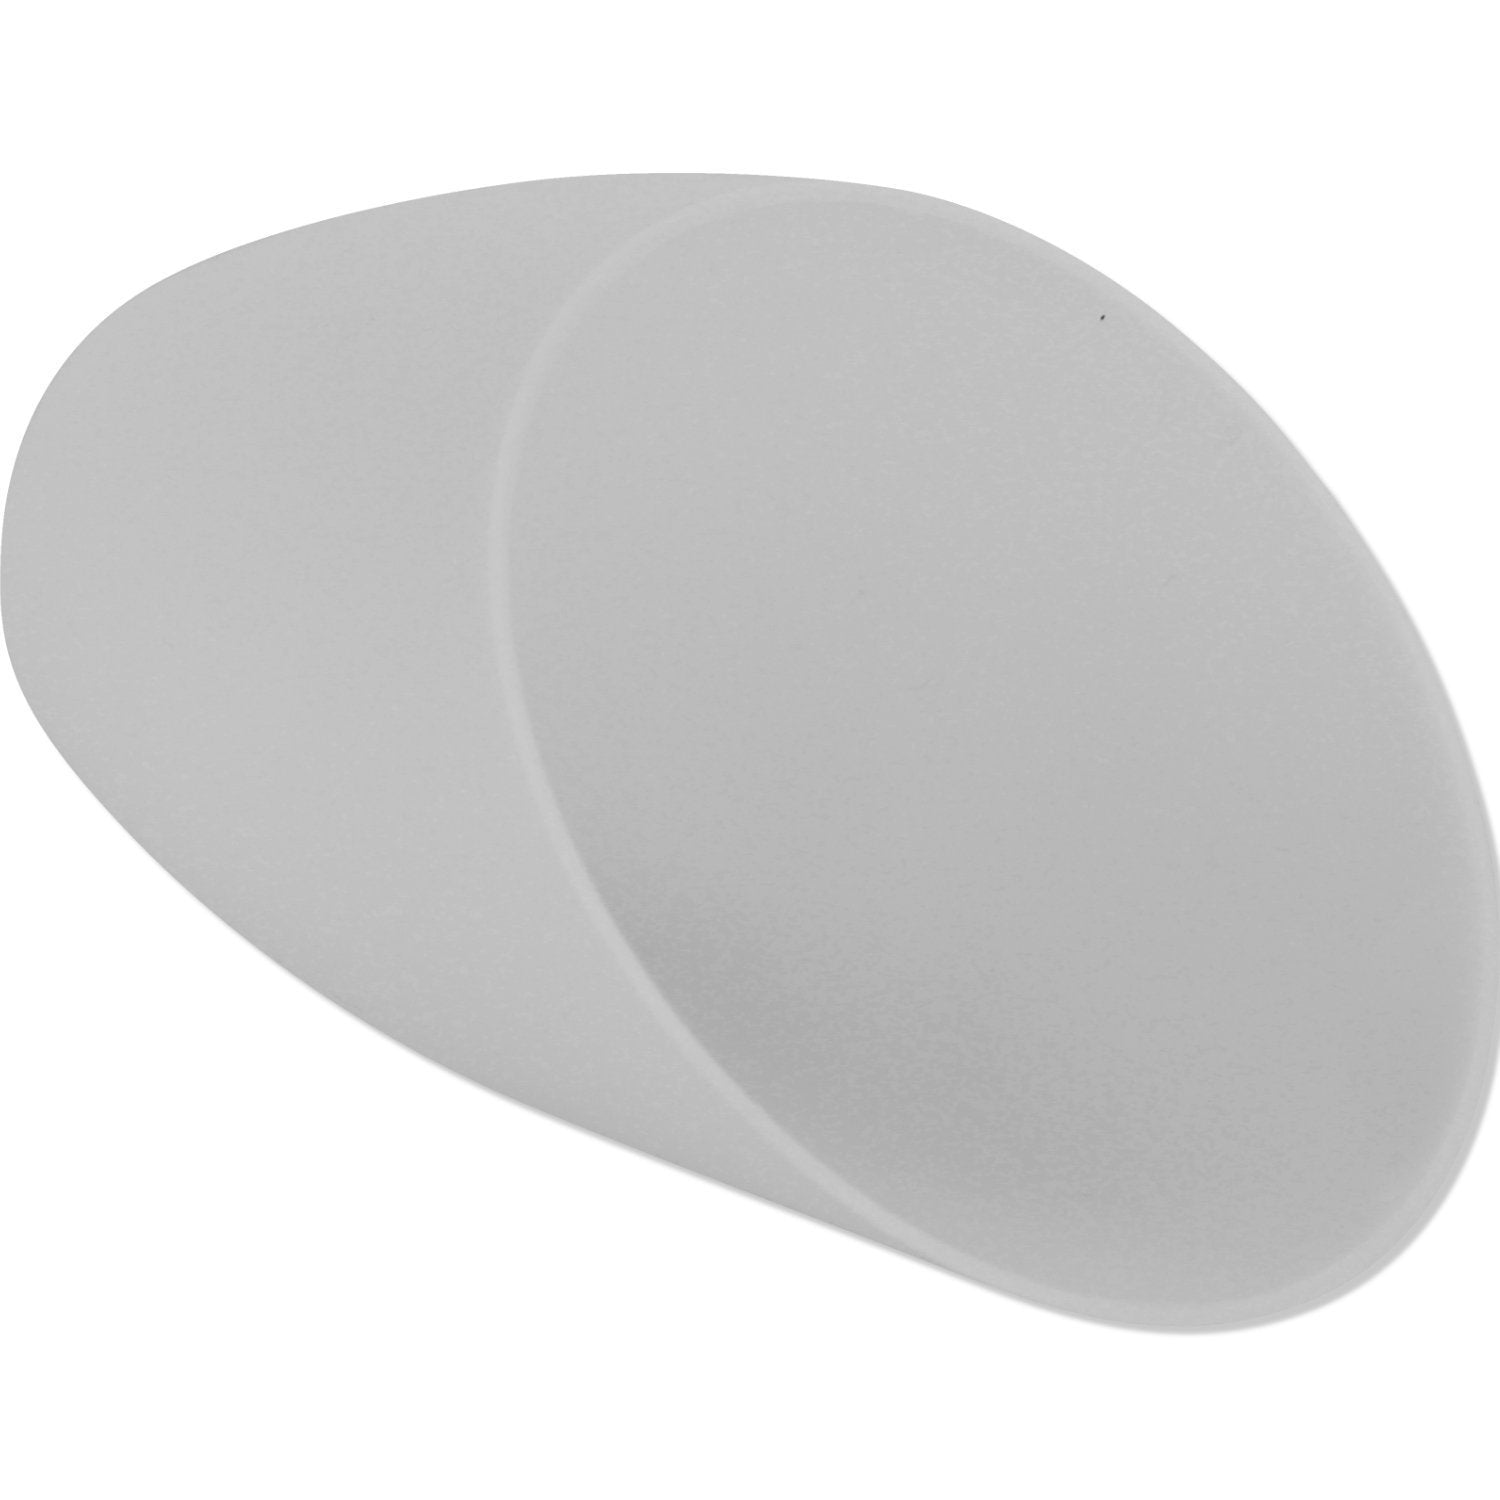 Medusa Floor Lamp Replacement Shade White For Model 16197 16196